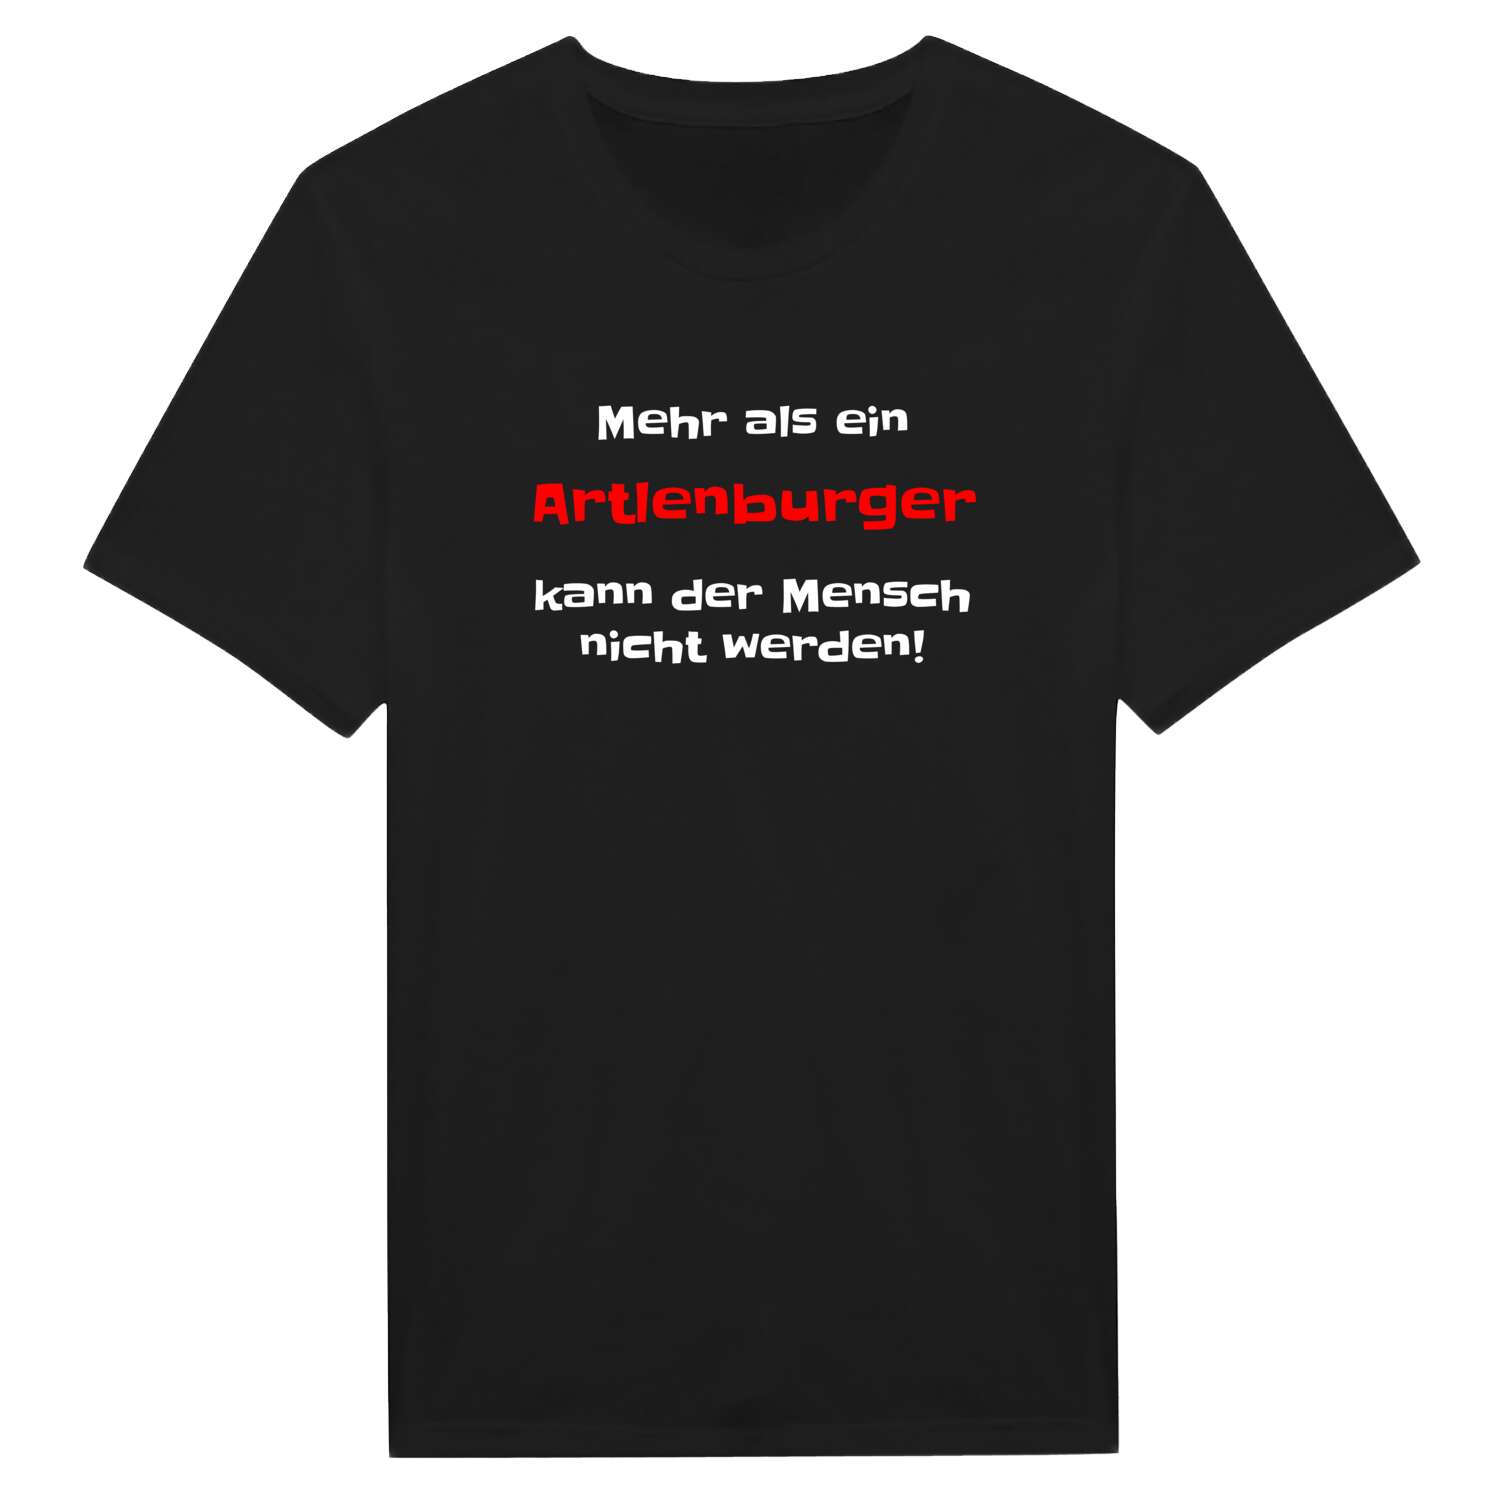 Artlenburg T-Shirt »Mehr als ein«